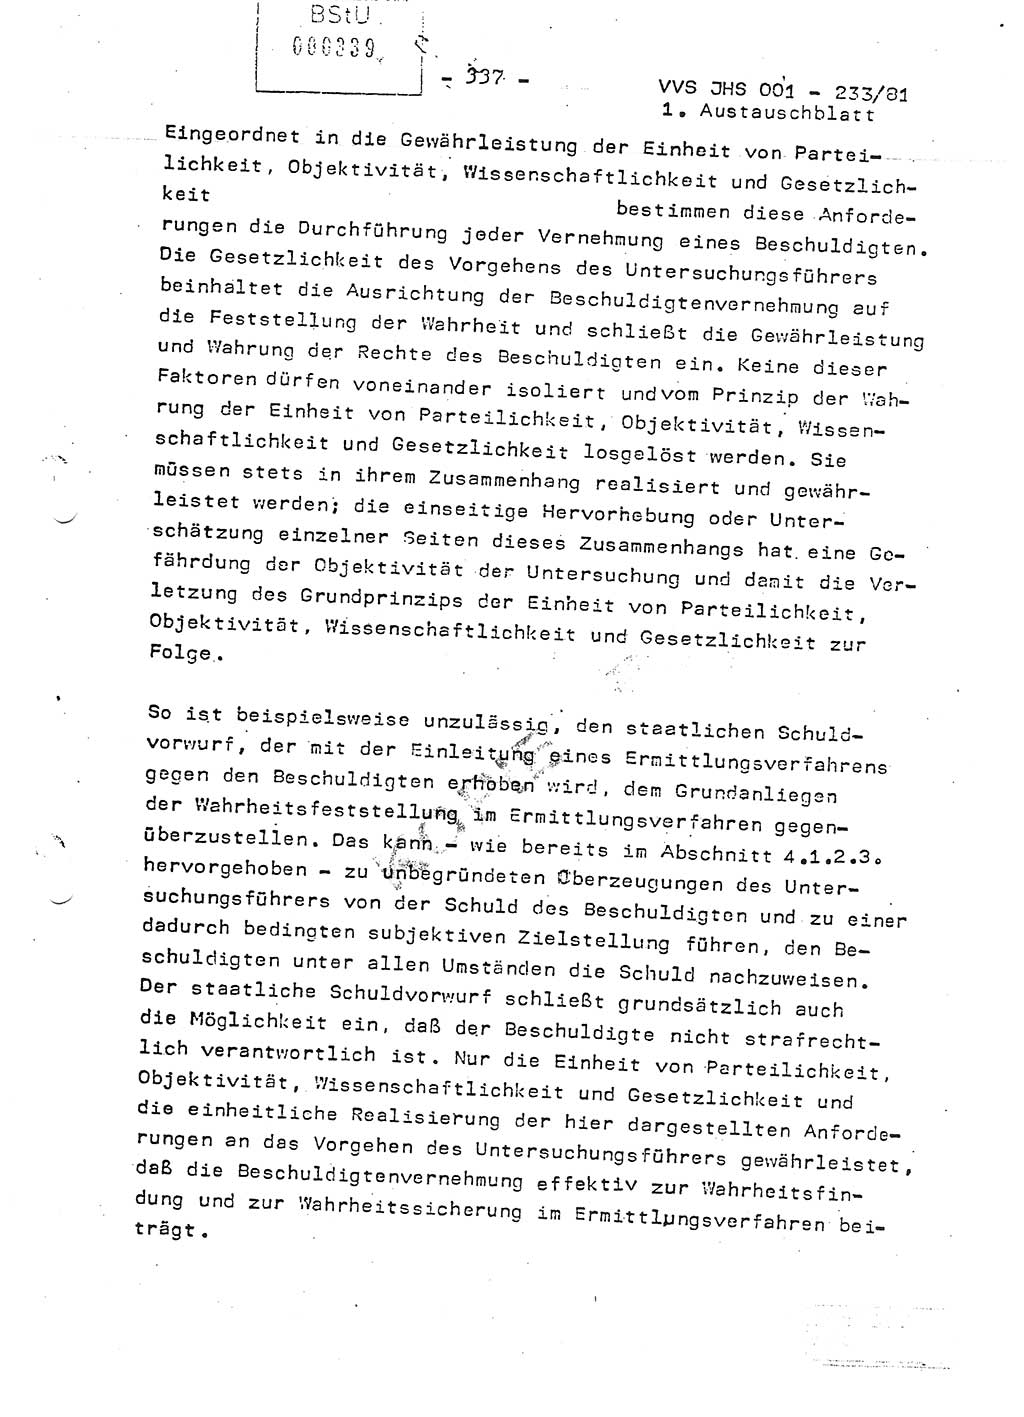 Dissertation Oberstleutnant Horst Zank (JHS), Oberstleutnant Dr. Karl-Heinz Knoblauch (JHS), Oberstleutnant Gustav-Adolf Kowalewski (HA Ⅸ), Oberstleutnant Wolfgang Plötner (HA Ⅸ), Ministerium für Staatssicherheit (MfS) [Deutsche Demokratische Republik (DDR)], Juristische Hochschule (JHS), Vertrauliche Verschlußsache (VVS) o001-233/81, Potsdam 1981, Blatt 337 (Diss. MfS DDR JHS VVS o001-233/81 1981, Bl. 337)